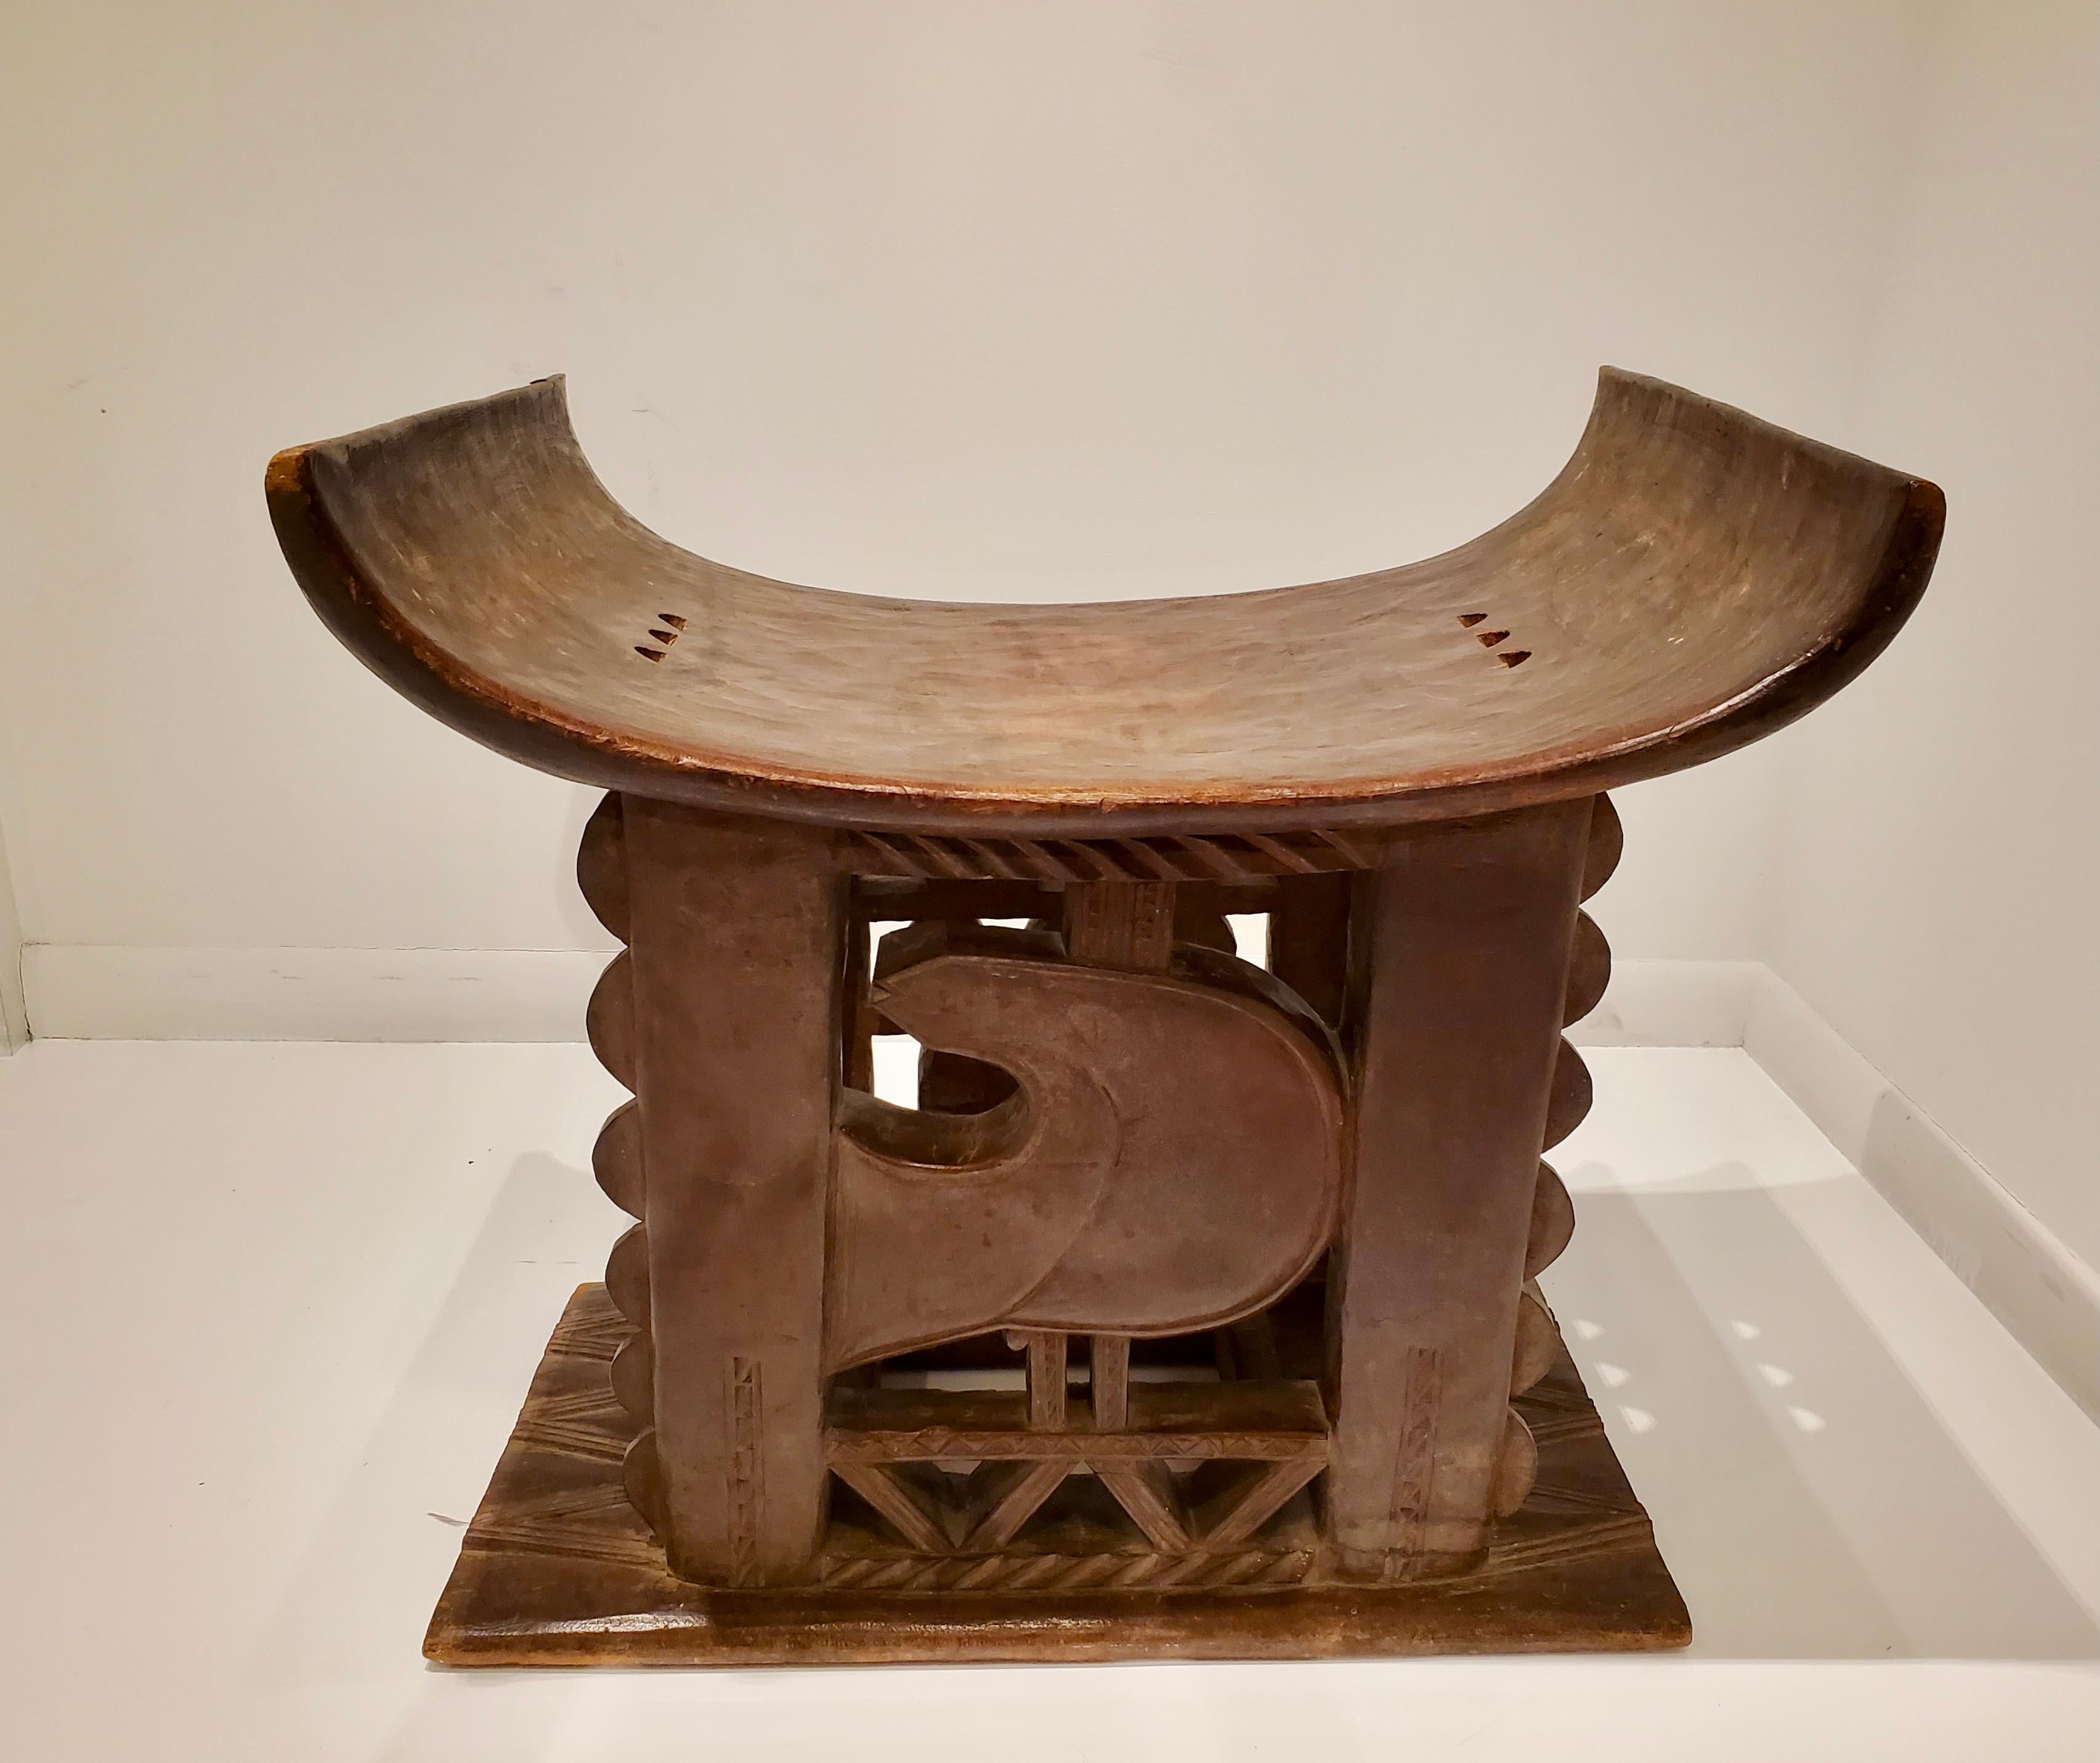 Ein außergewöhnlicher und ungewöhnlich großer, handgeschnitzter Ashanti-Holzhocker aus Ghana aus dem frühen 20. Jahrhundert, der auf der einen Seite gezackte und geometrische Formen und auf der anderen Seite einen stilisierten Vogel zeigt, der das